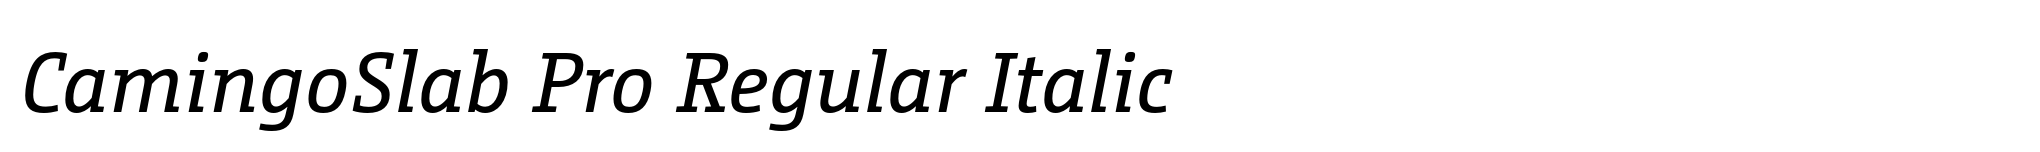 CamingoSlab Pro Regular Italic image